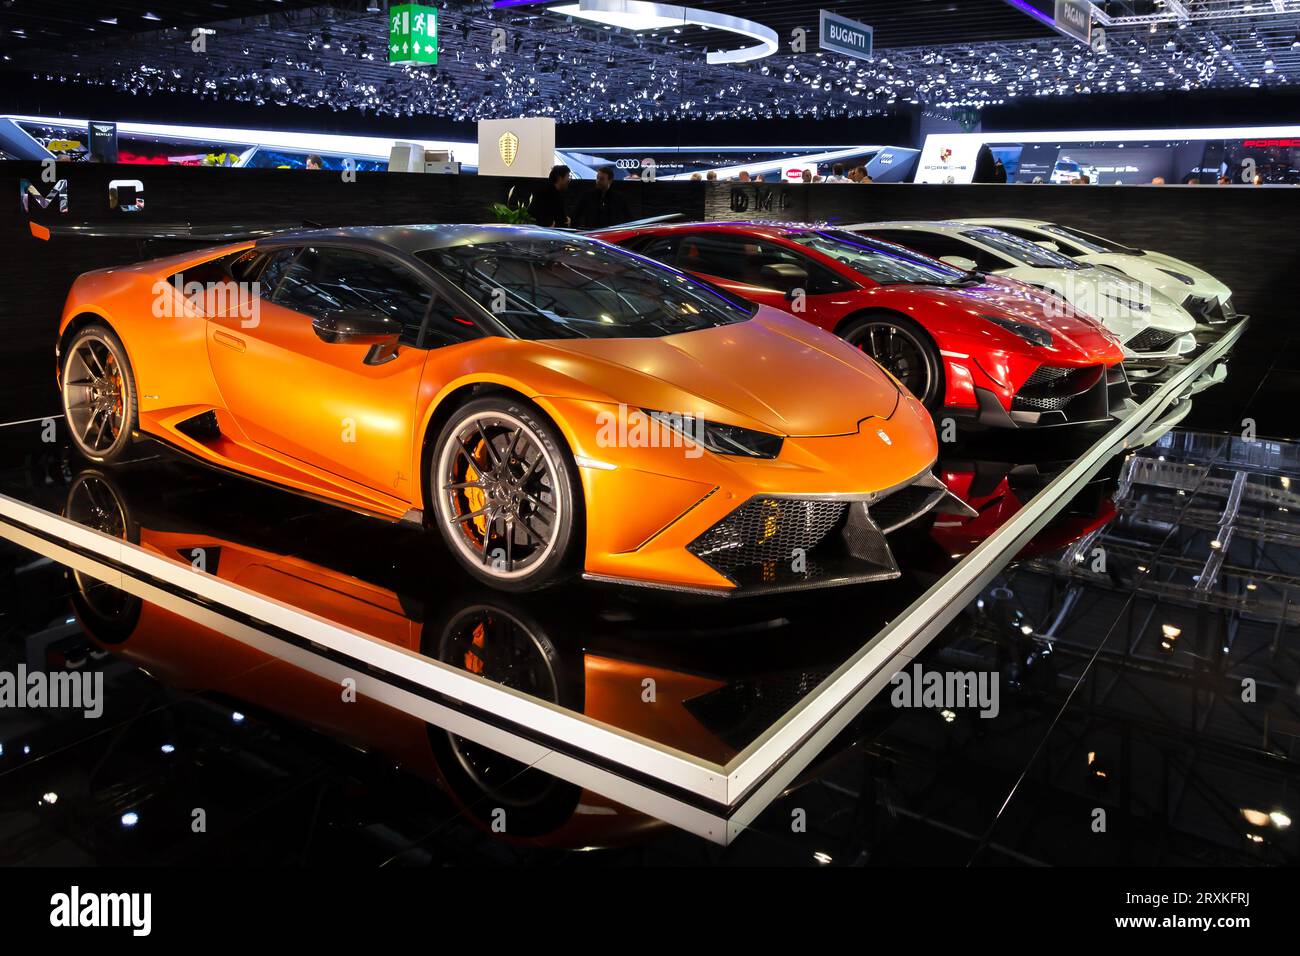 Supercar Lamborghini personalizzate della DMC Exotic Car Tuning Ltd al 85° Salone Internazionale dell'automobile di Ginevra a Palexpo, Ginevra. 4 marzo 2015 Foto Stock